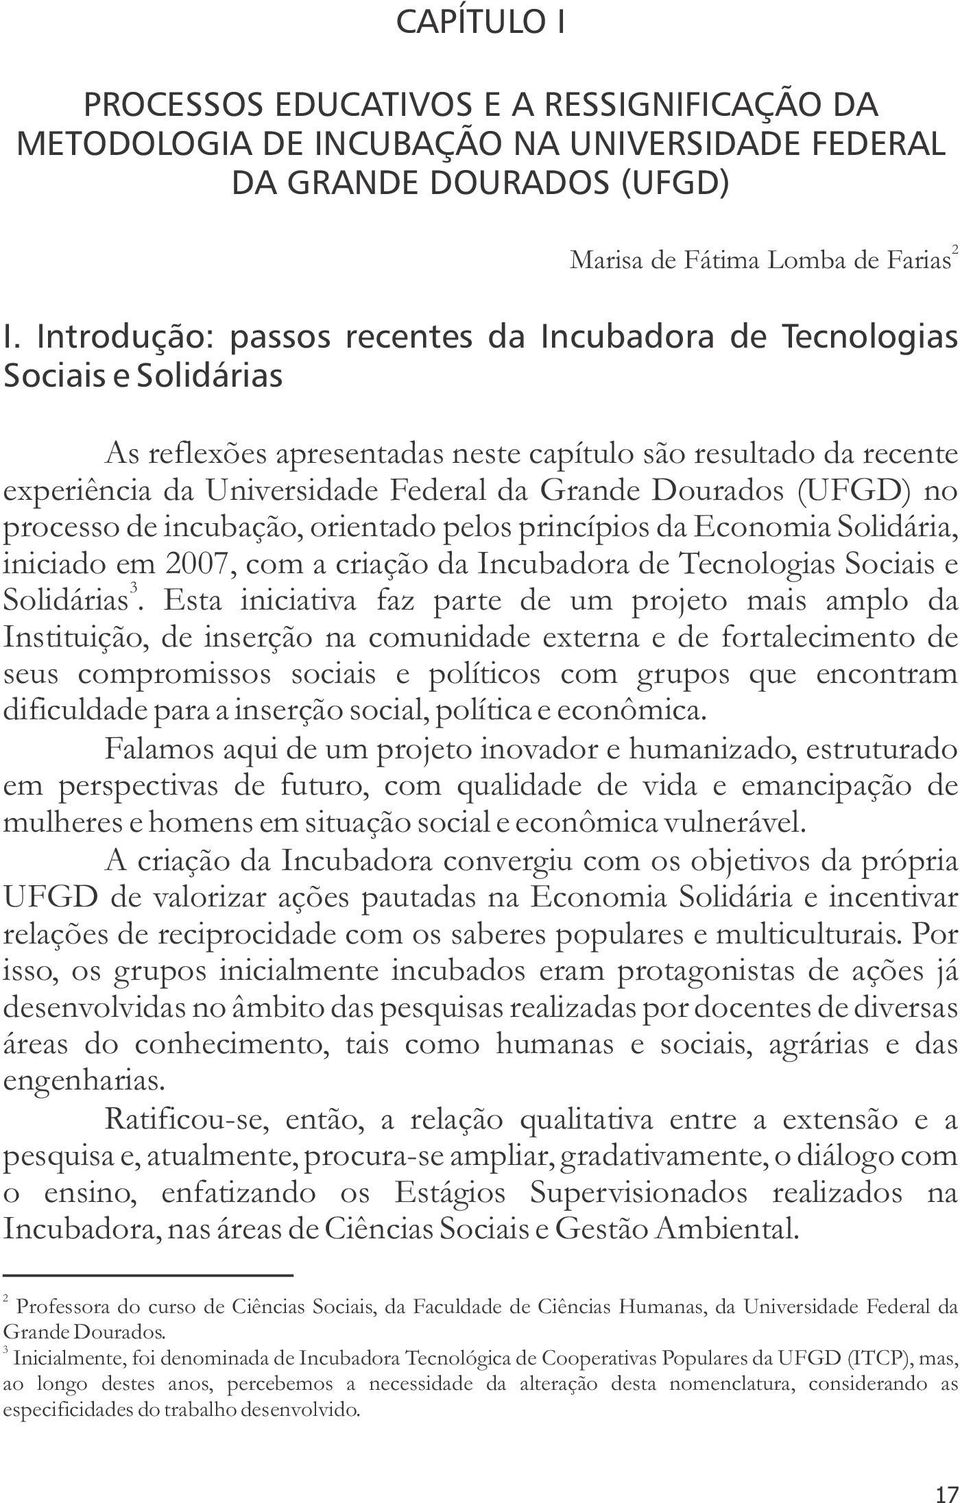 (UFGD) no processo de incubação, orientado pelos princípios da Economia Solidária, iniciado em 2007, com a criação da Incubadora de Tecnologias Sociais e 3 Solidárias.